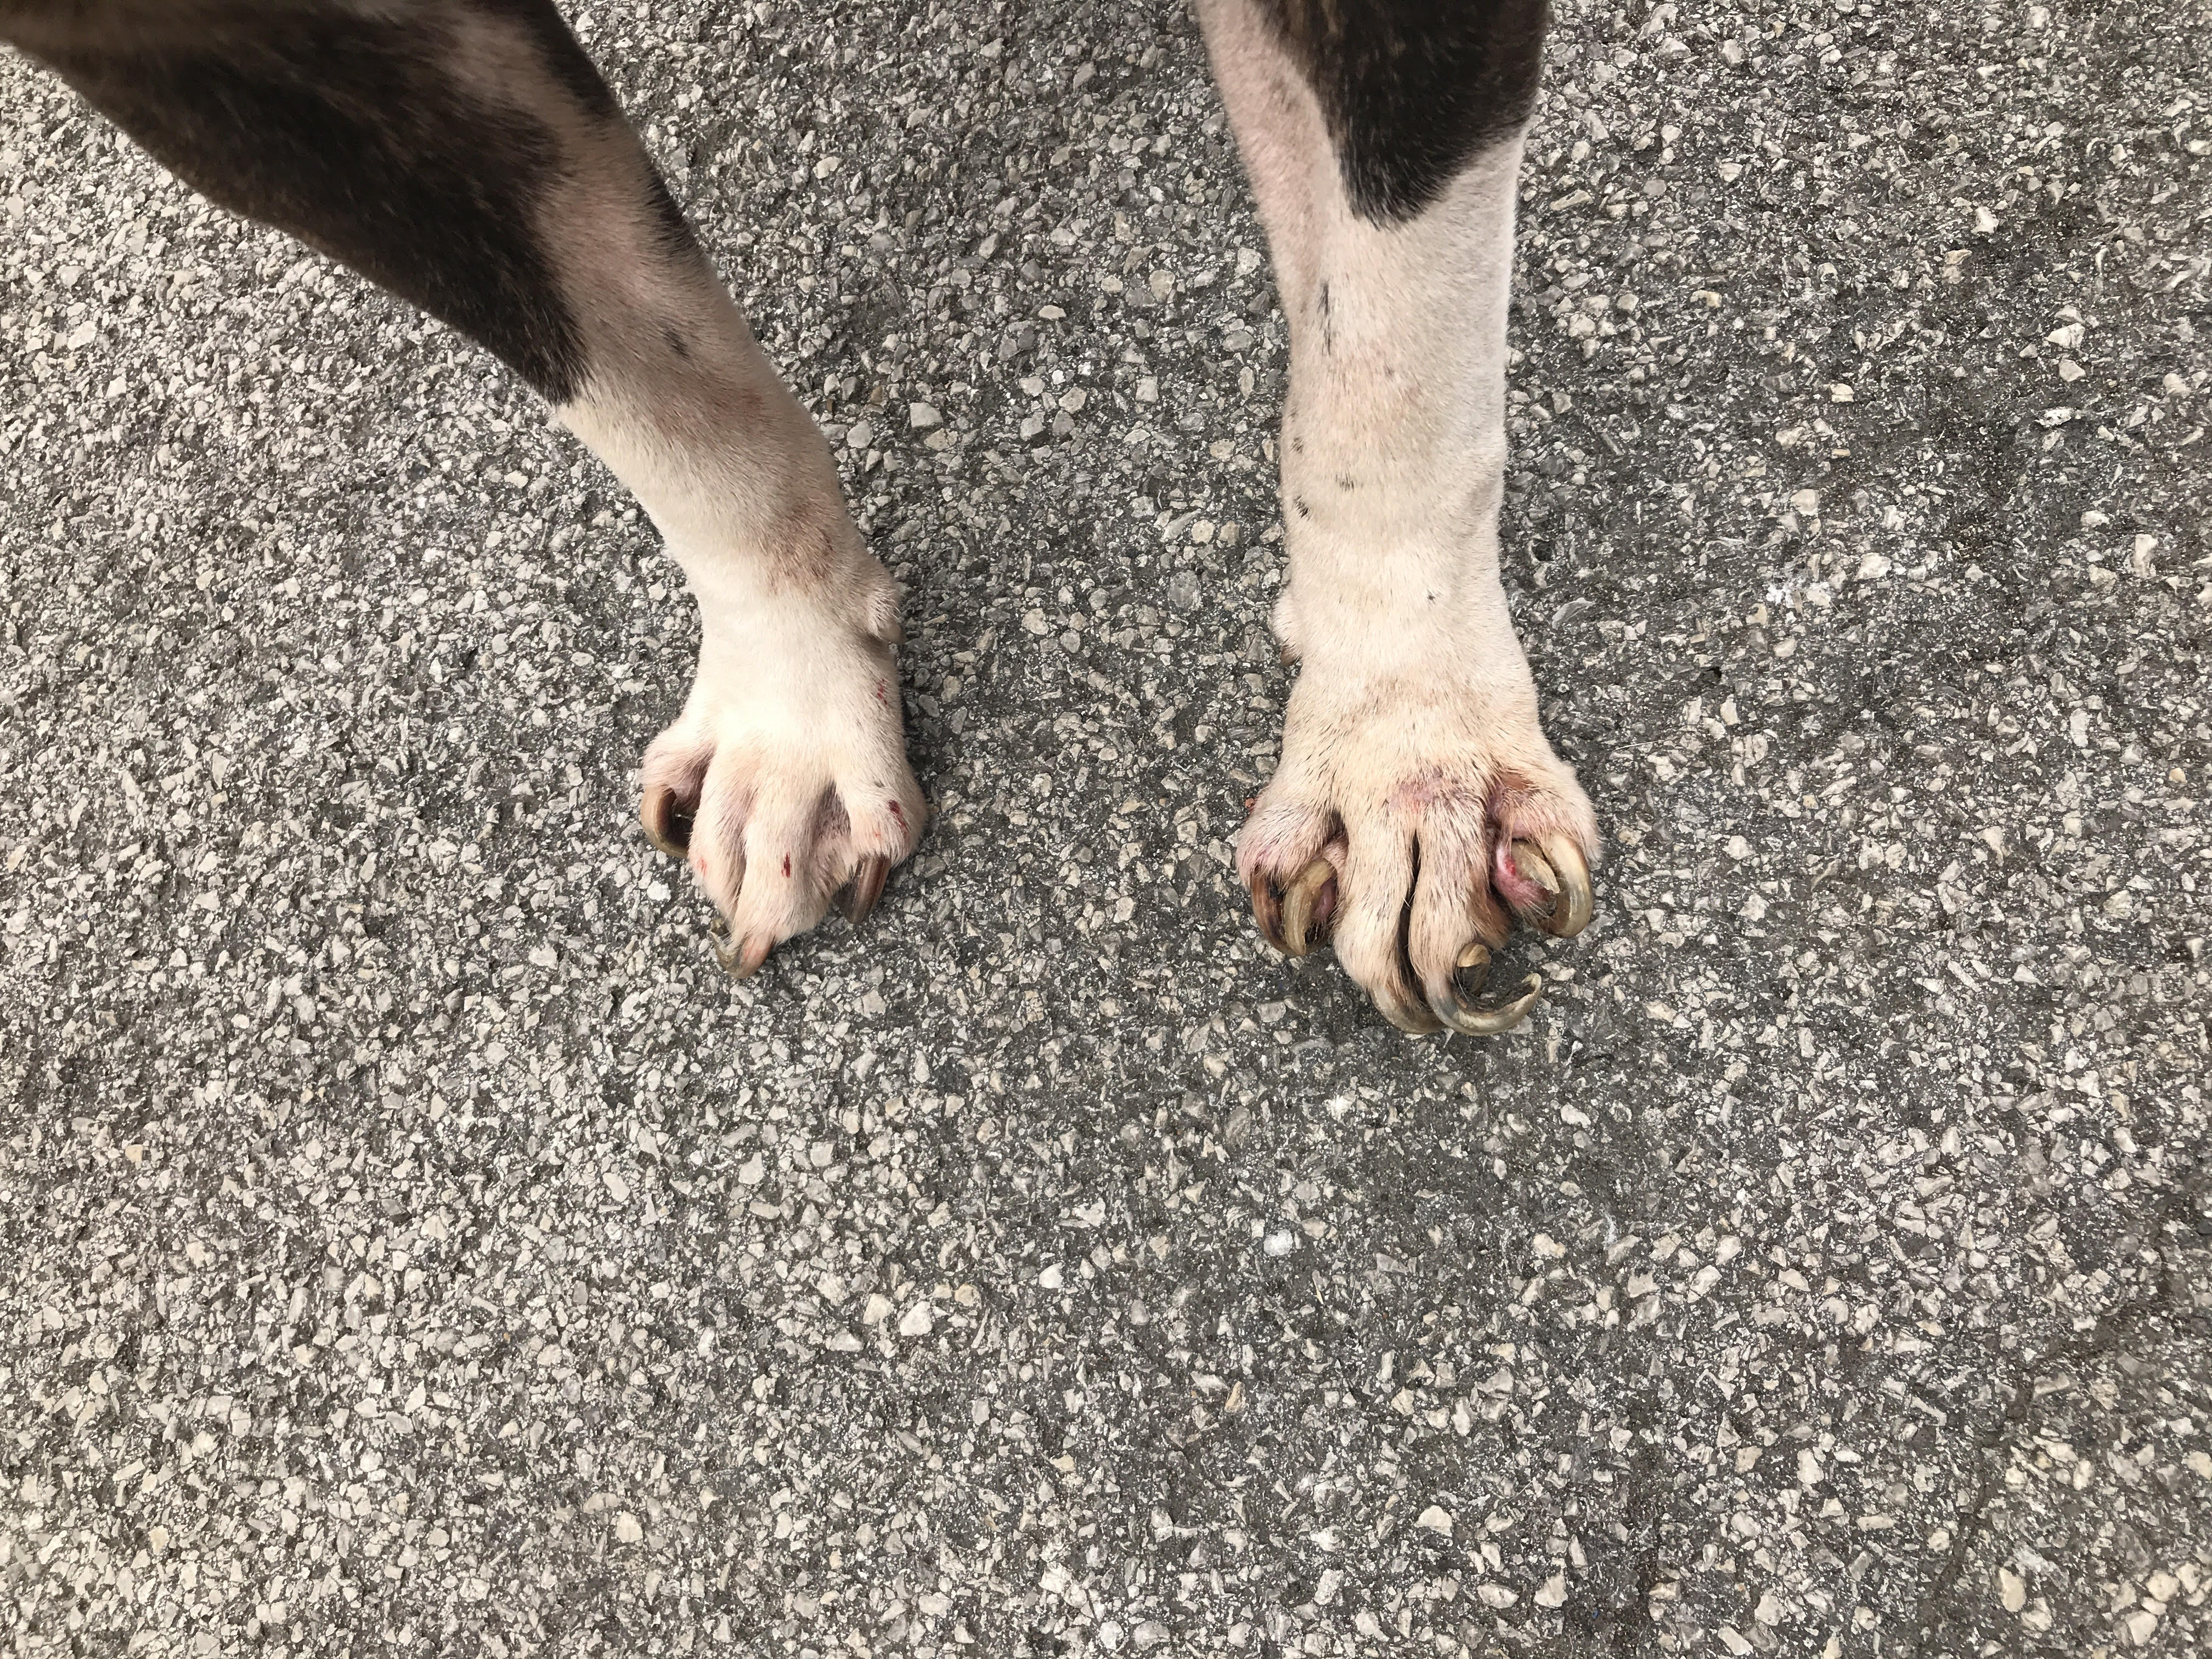 Dog nails